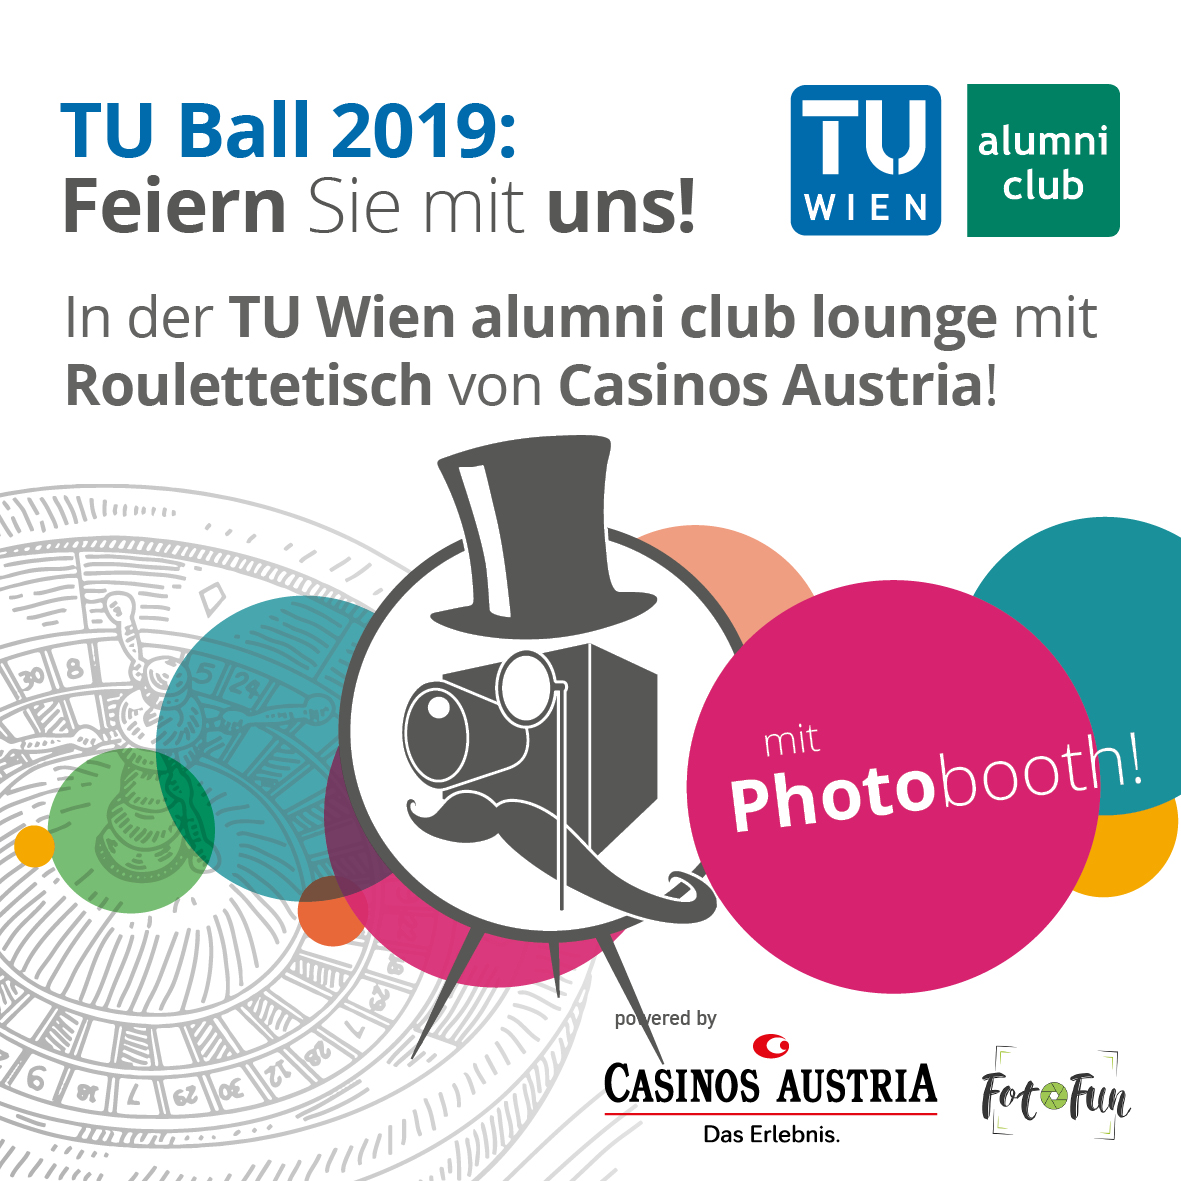 TU Ball 2019: Feiern Sie mit uns!